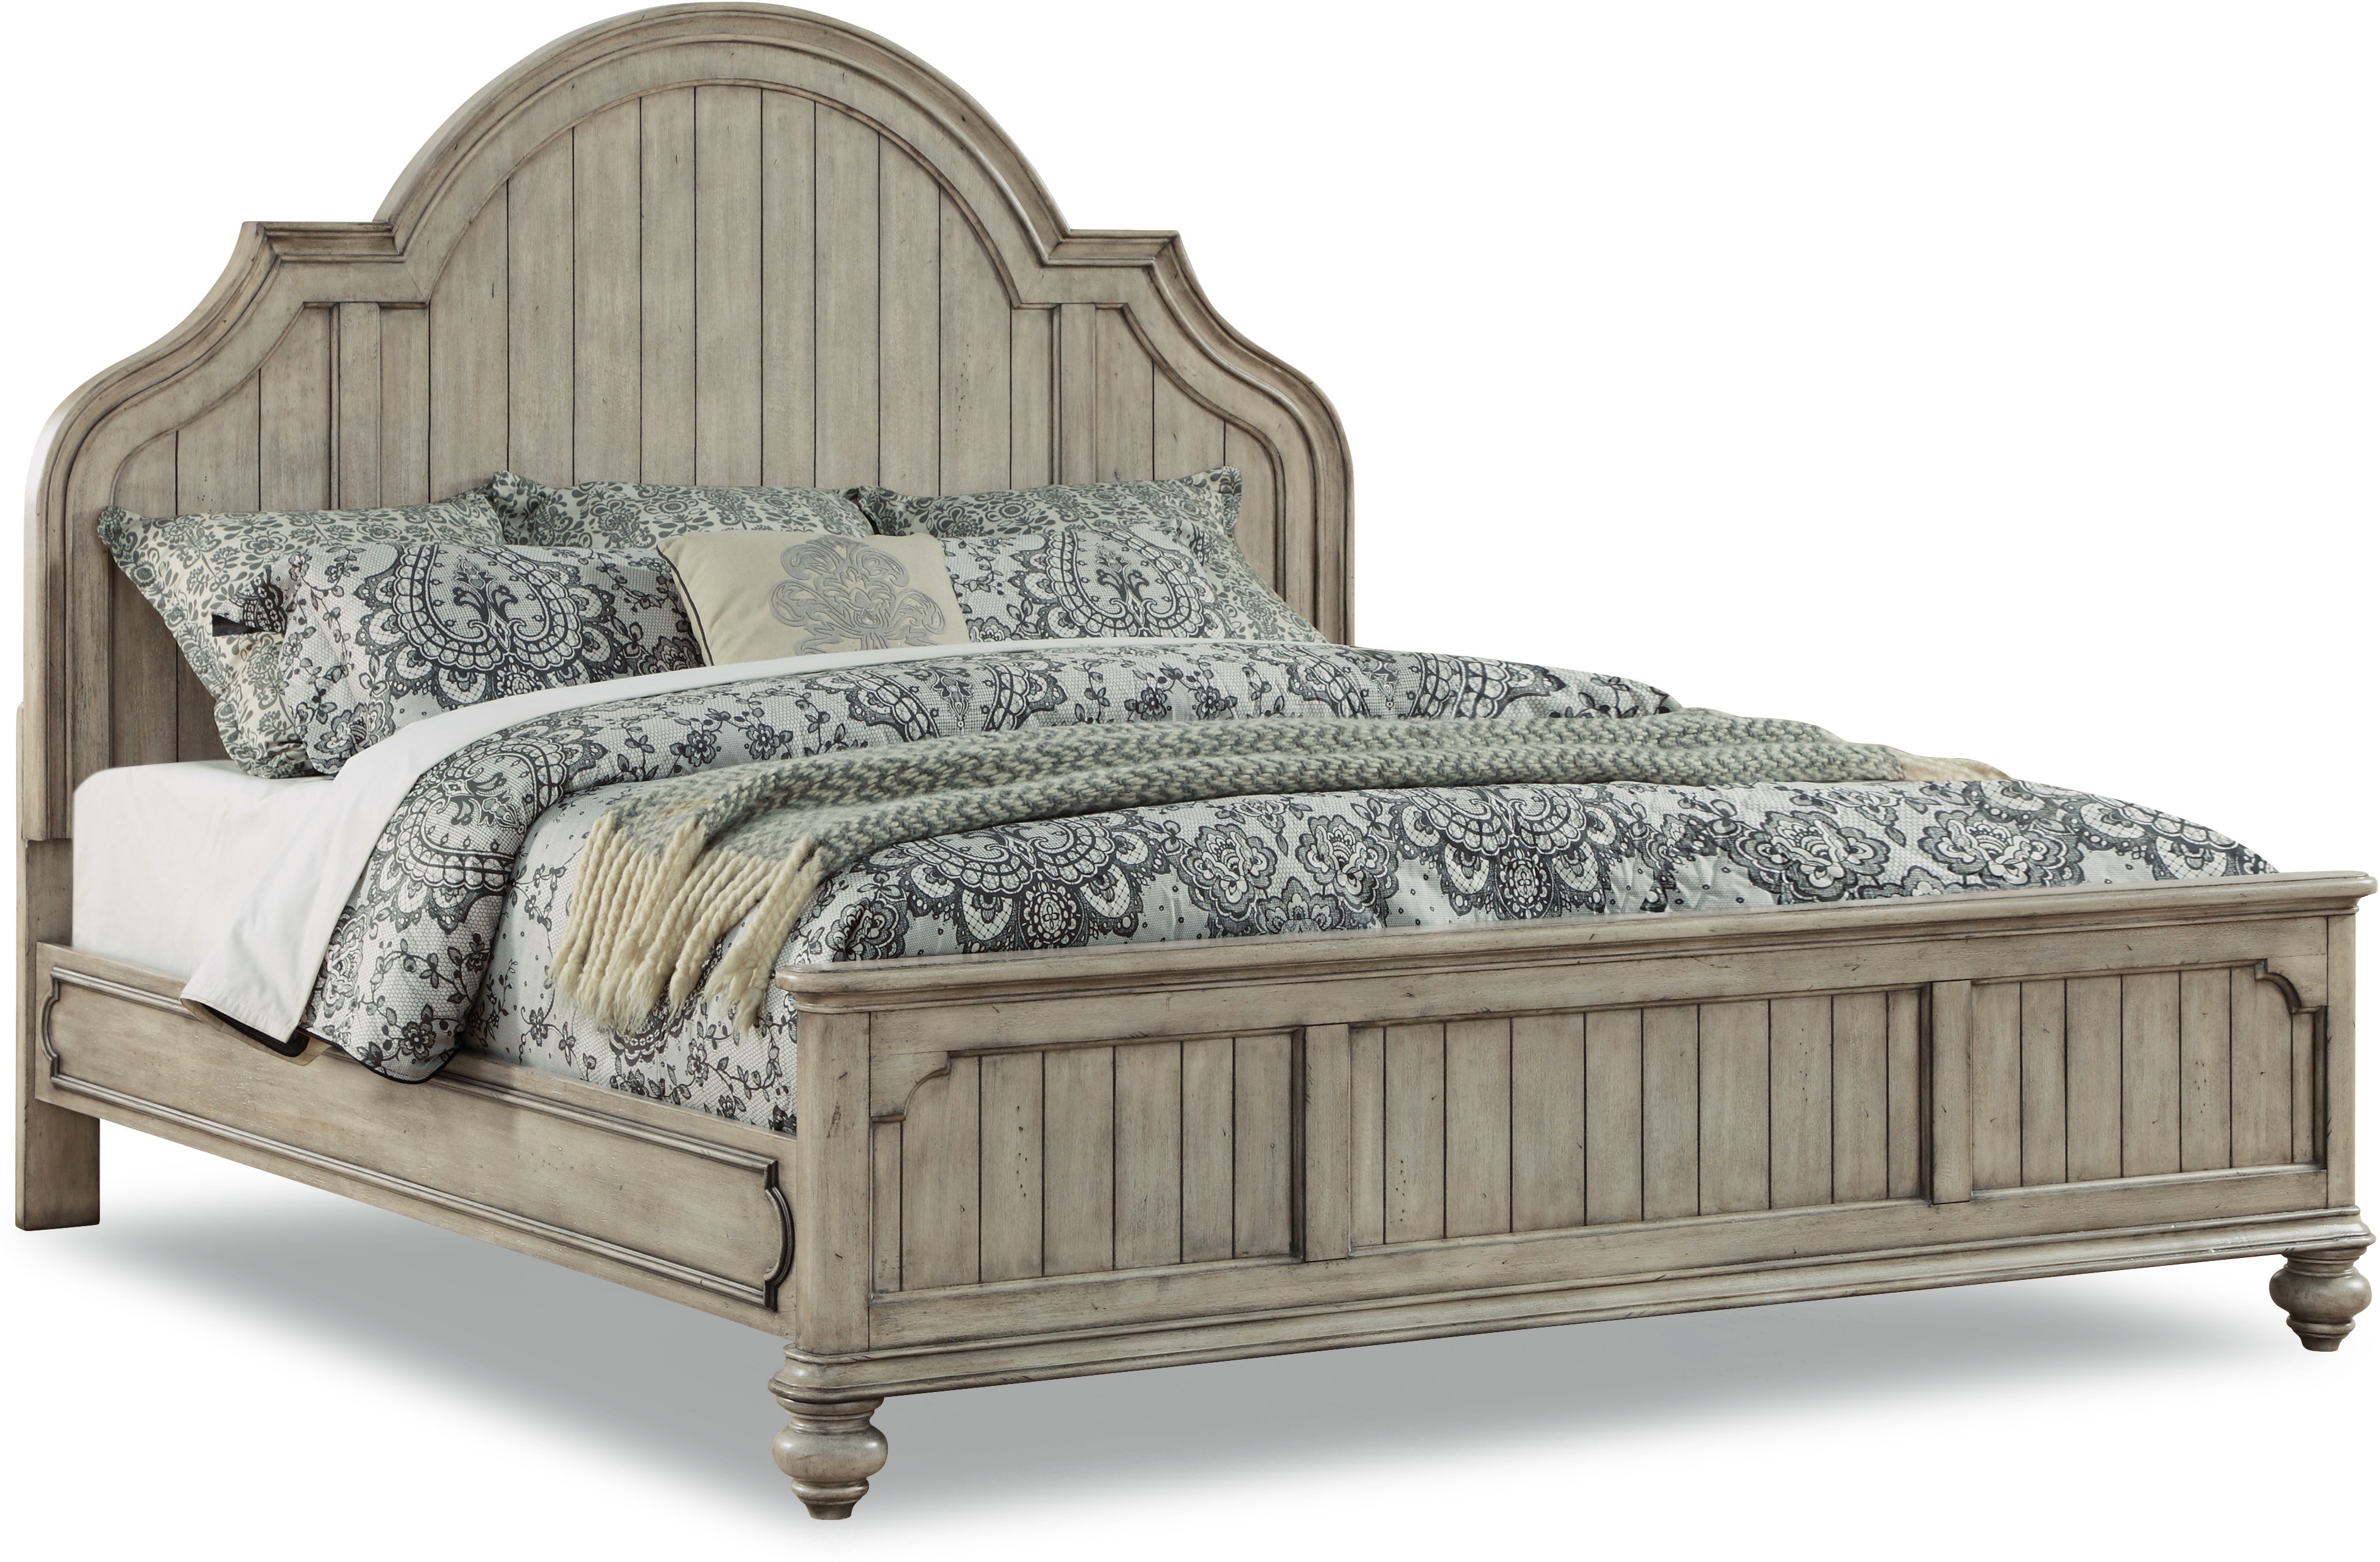 Flexsteel Bedroom Queen Bed W1047 91q